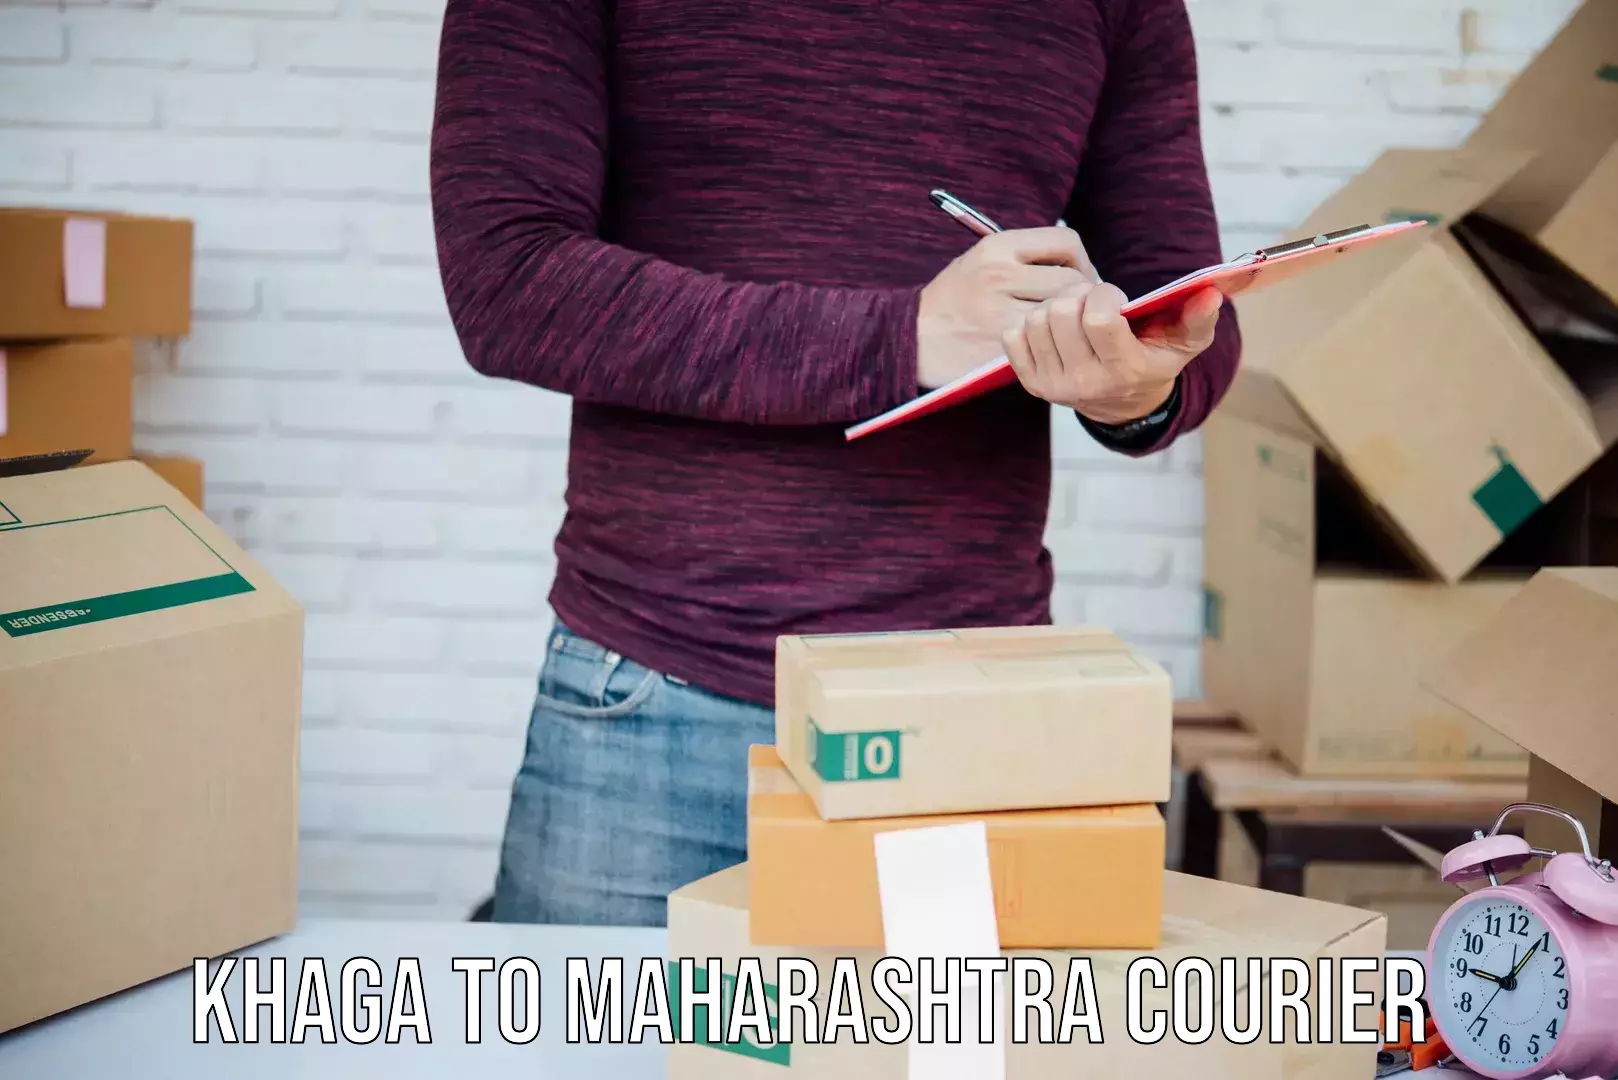 Cargo courier service Khaga to Maharashtra